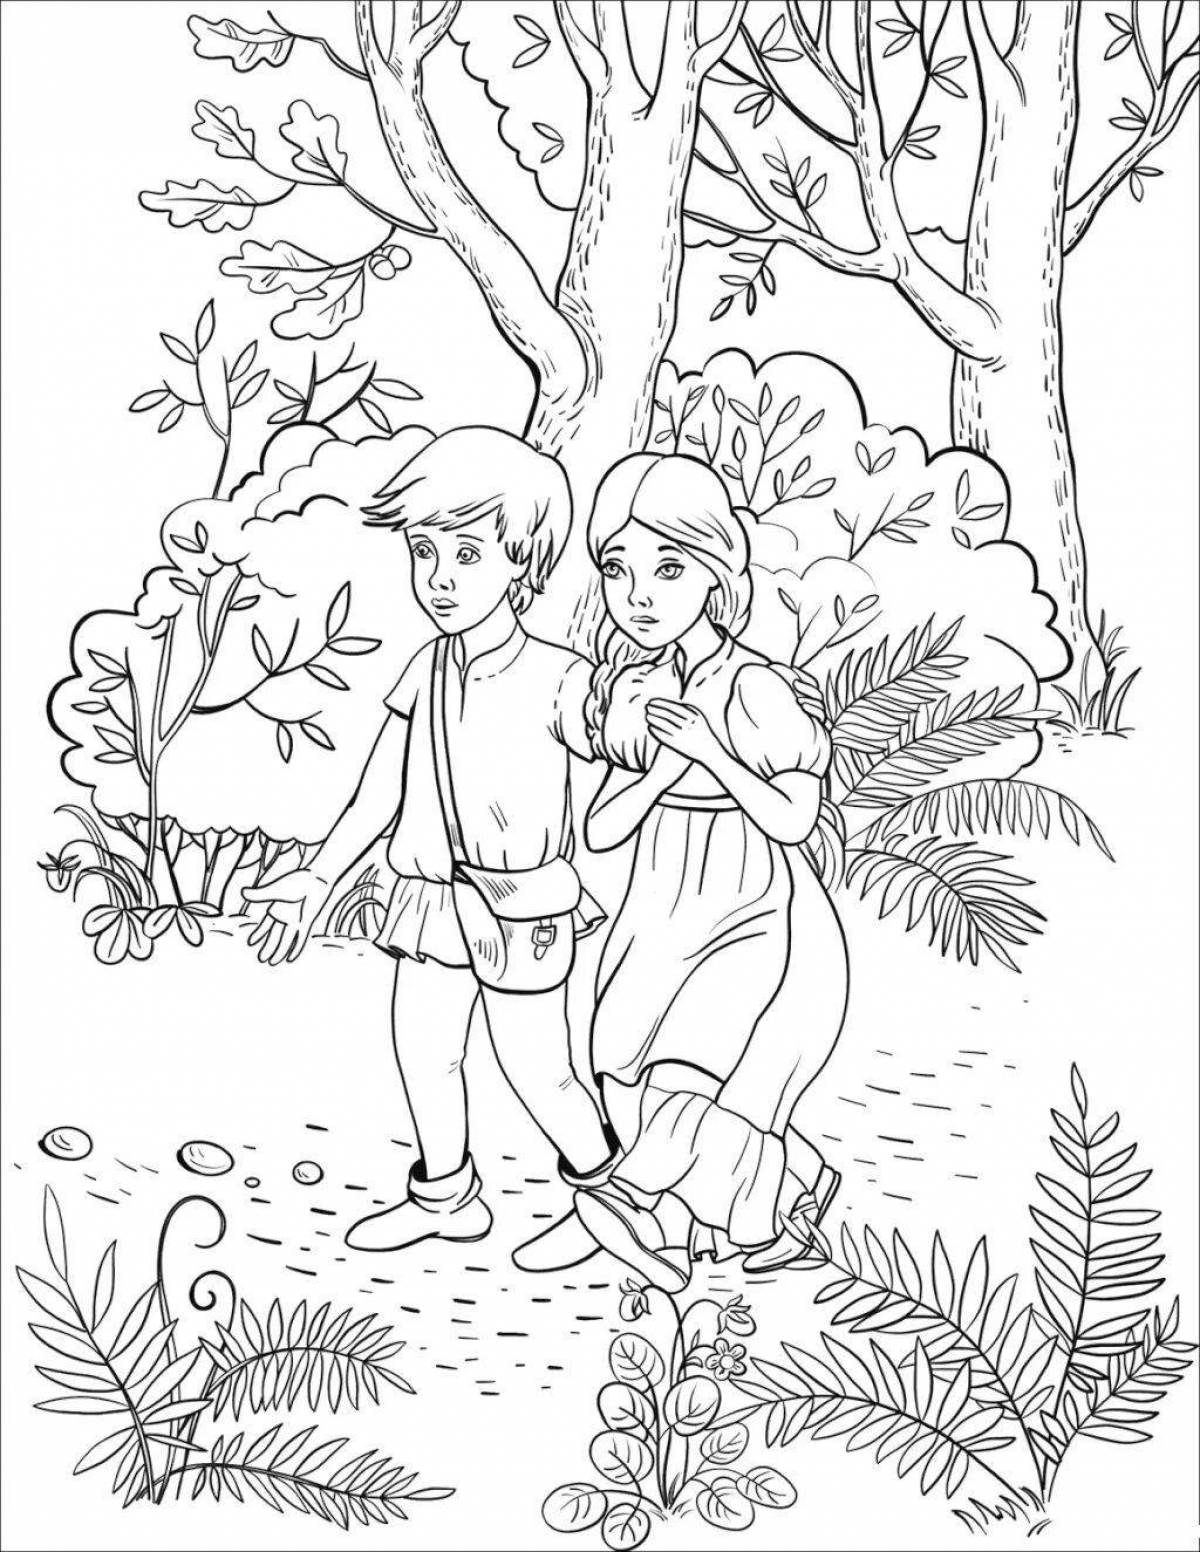 Любознательные дети собирают грибы в лесу